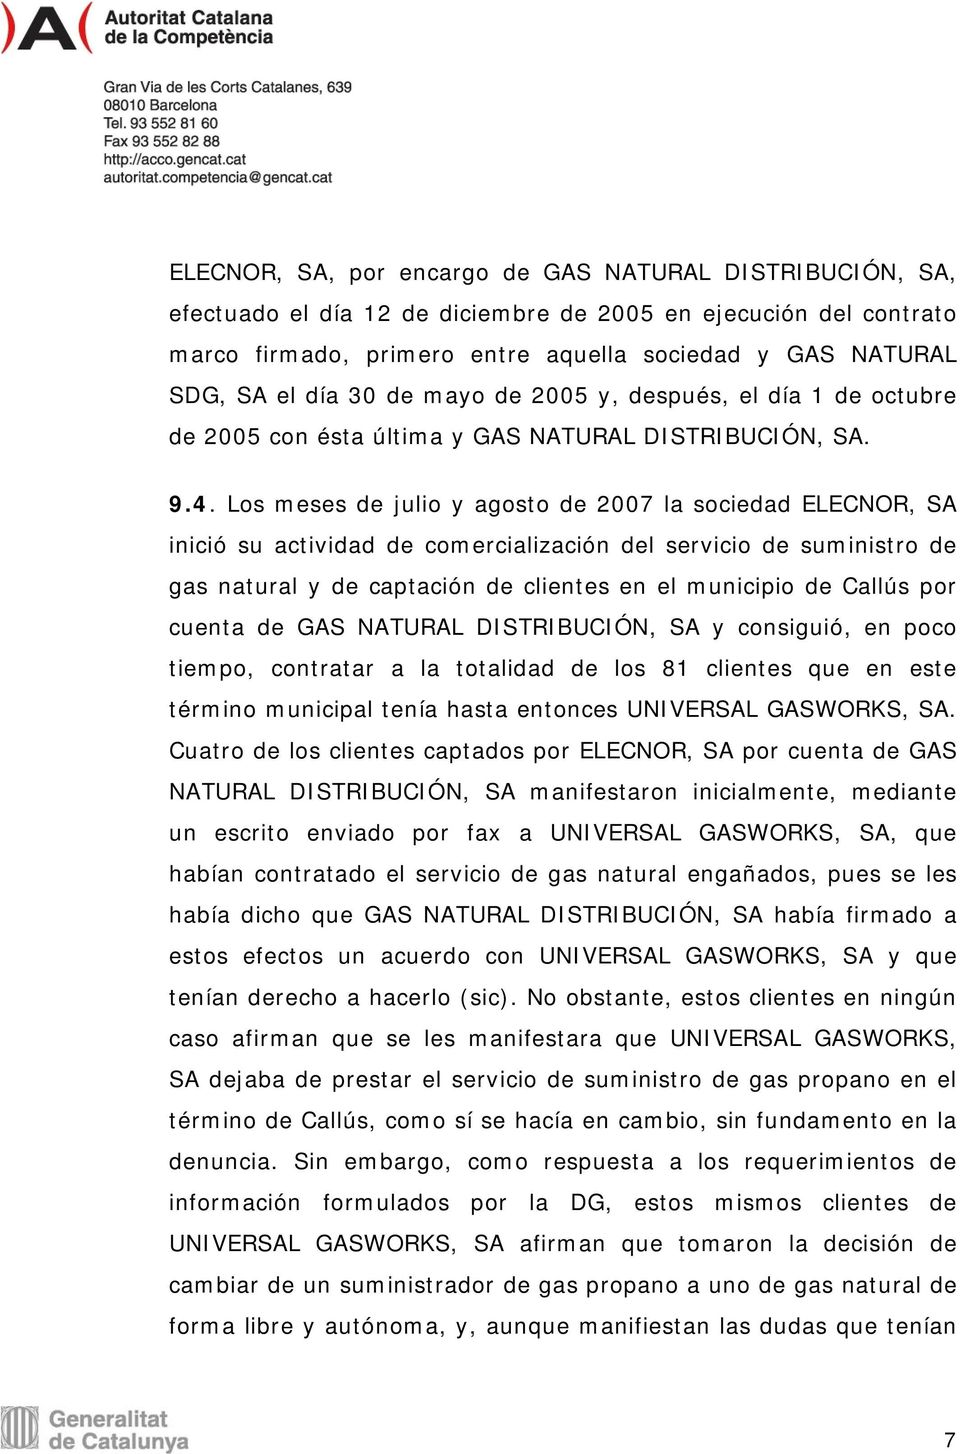 Los meses de julio y agosto de 2007 la sociedad ELECNOR, SA inició su actividad de comercialización del servicio de suministro de gas natural y de captación de clientes en el municipio de Callús por